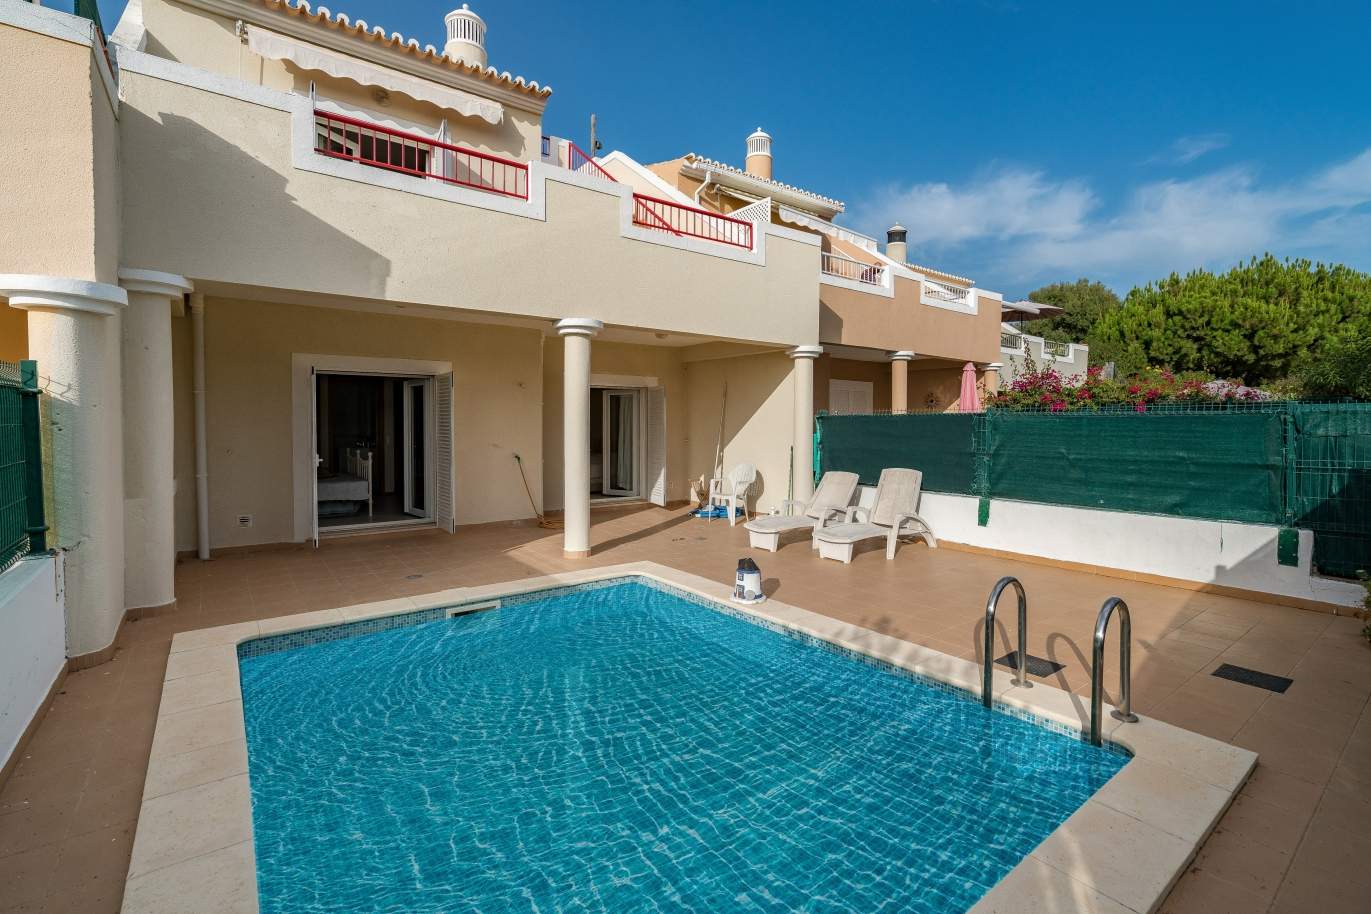 Moradia V2, com piscina, para venda, Carvoeiro, Algarve_149485